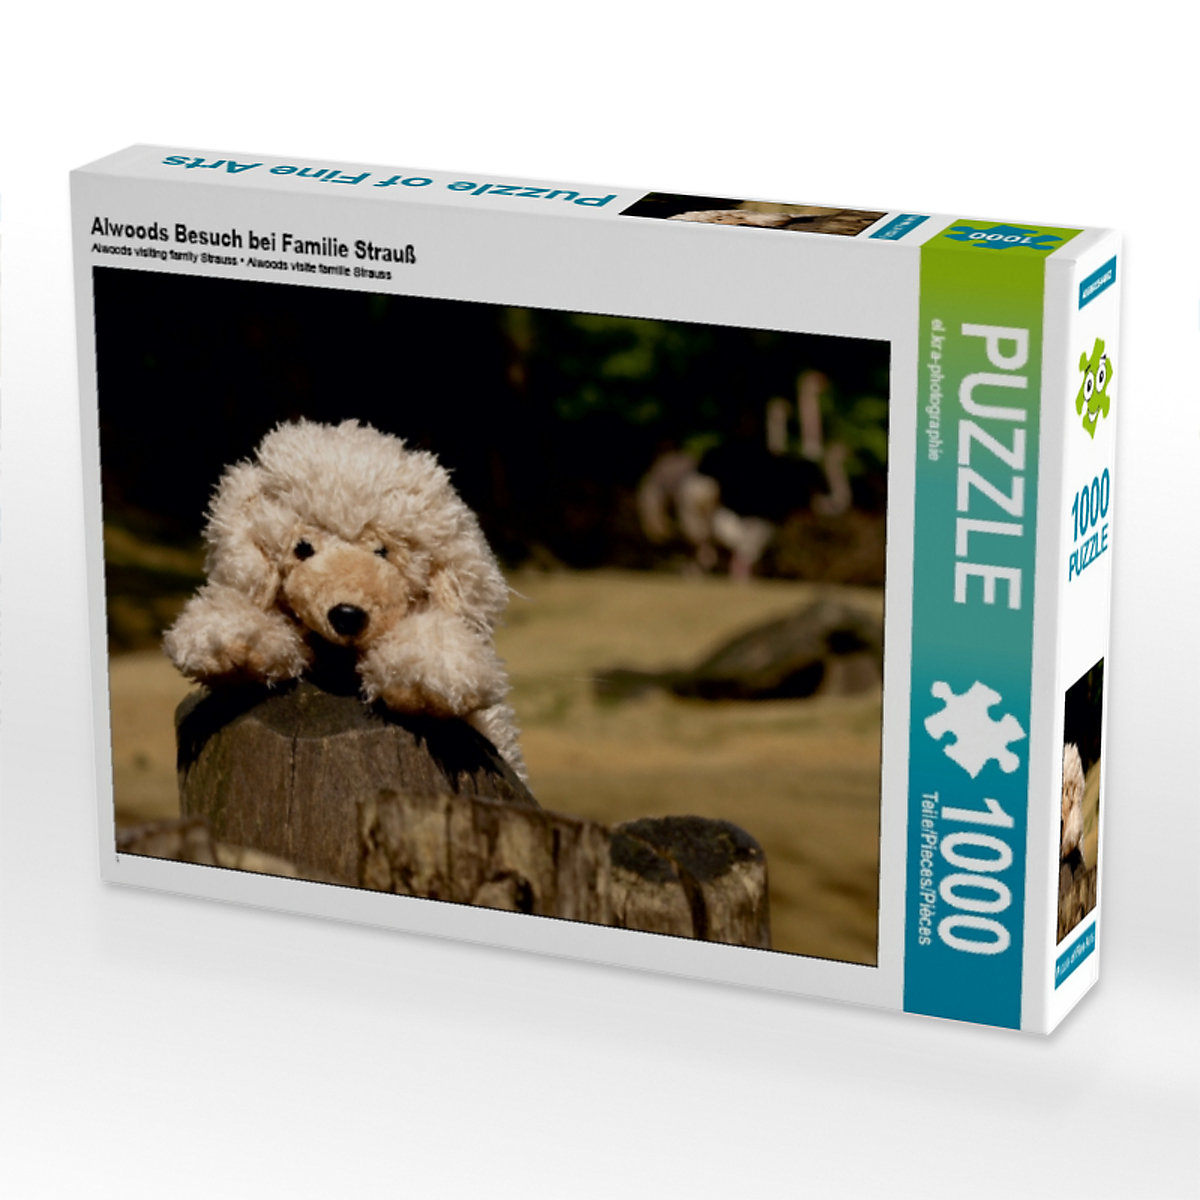 CALVENDO® Puzzle CALVENDO Puzzle Alwoods Besuch bei Familie Strauß 1000 Teile Foto-Puzzle für glückliche Stunden